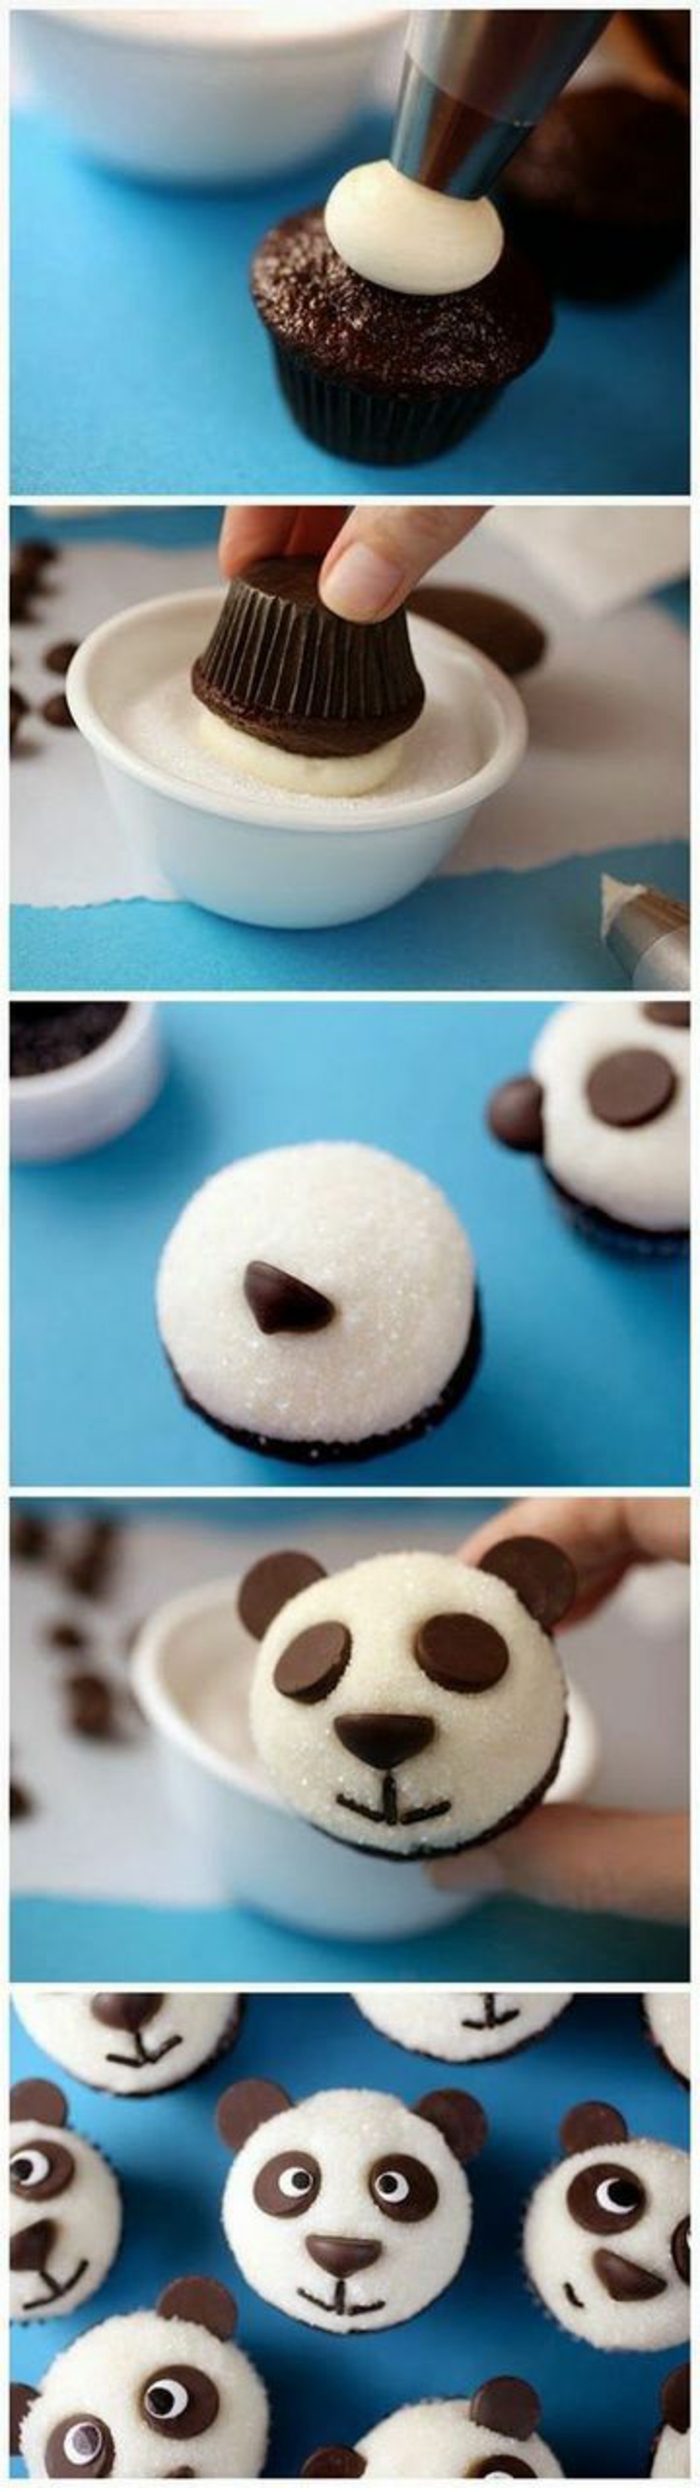 Csokoládé cupcakes fehér krémet és kakaó szemét medve